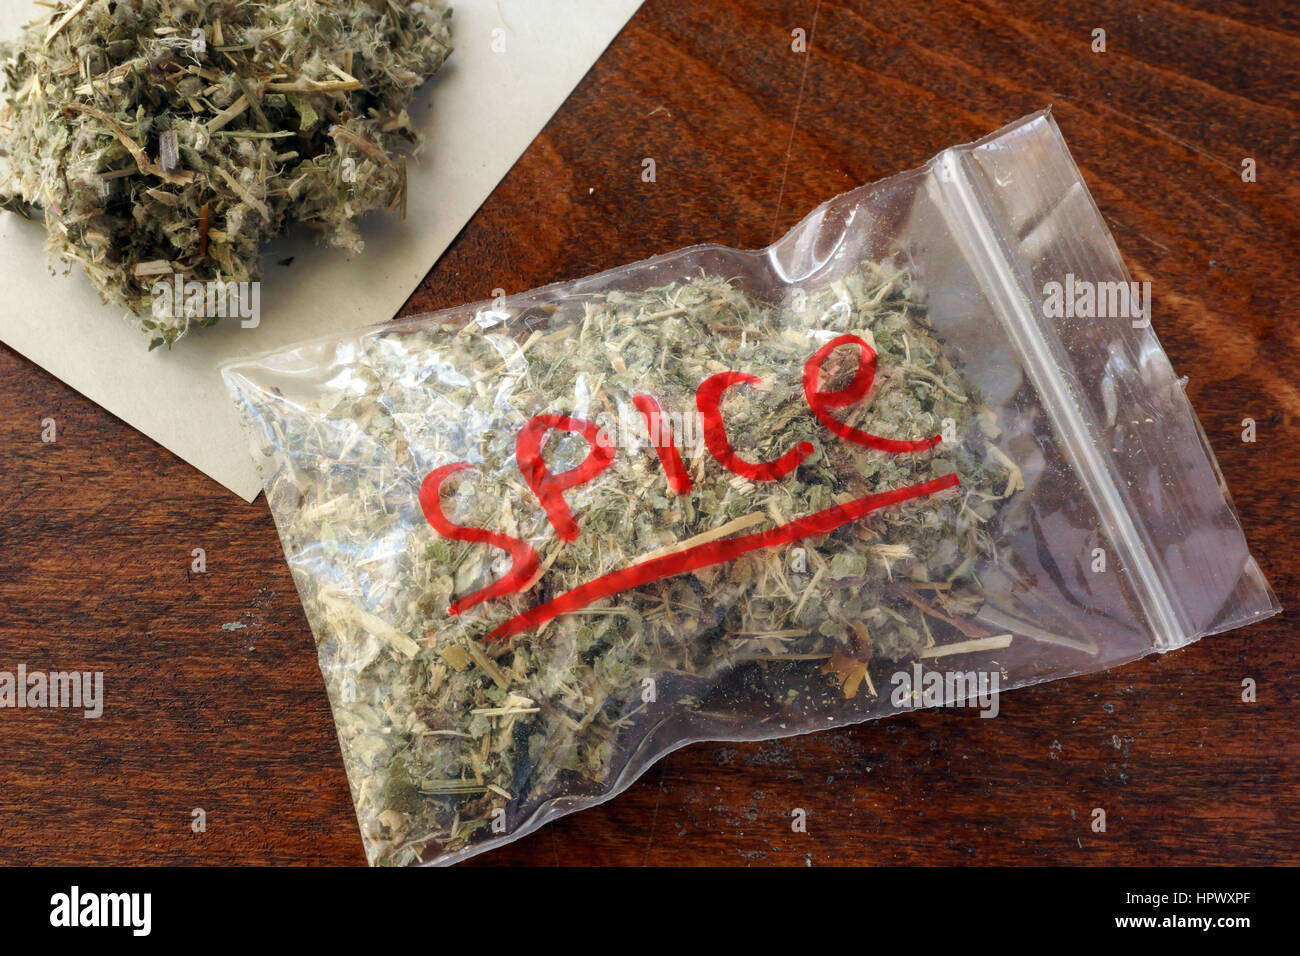 Marijuana bag hi-res stock photography and images - Alamy